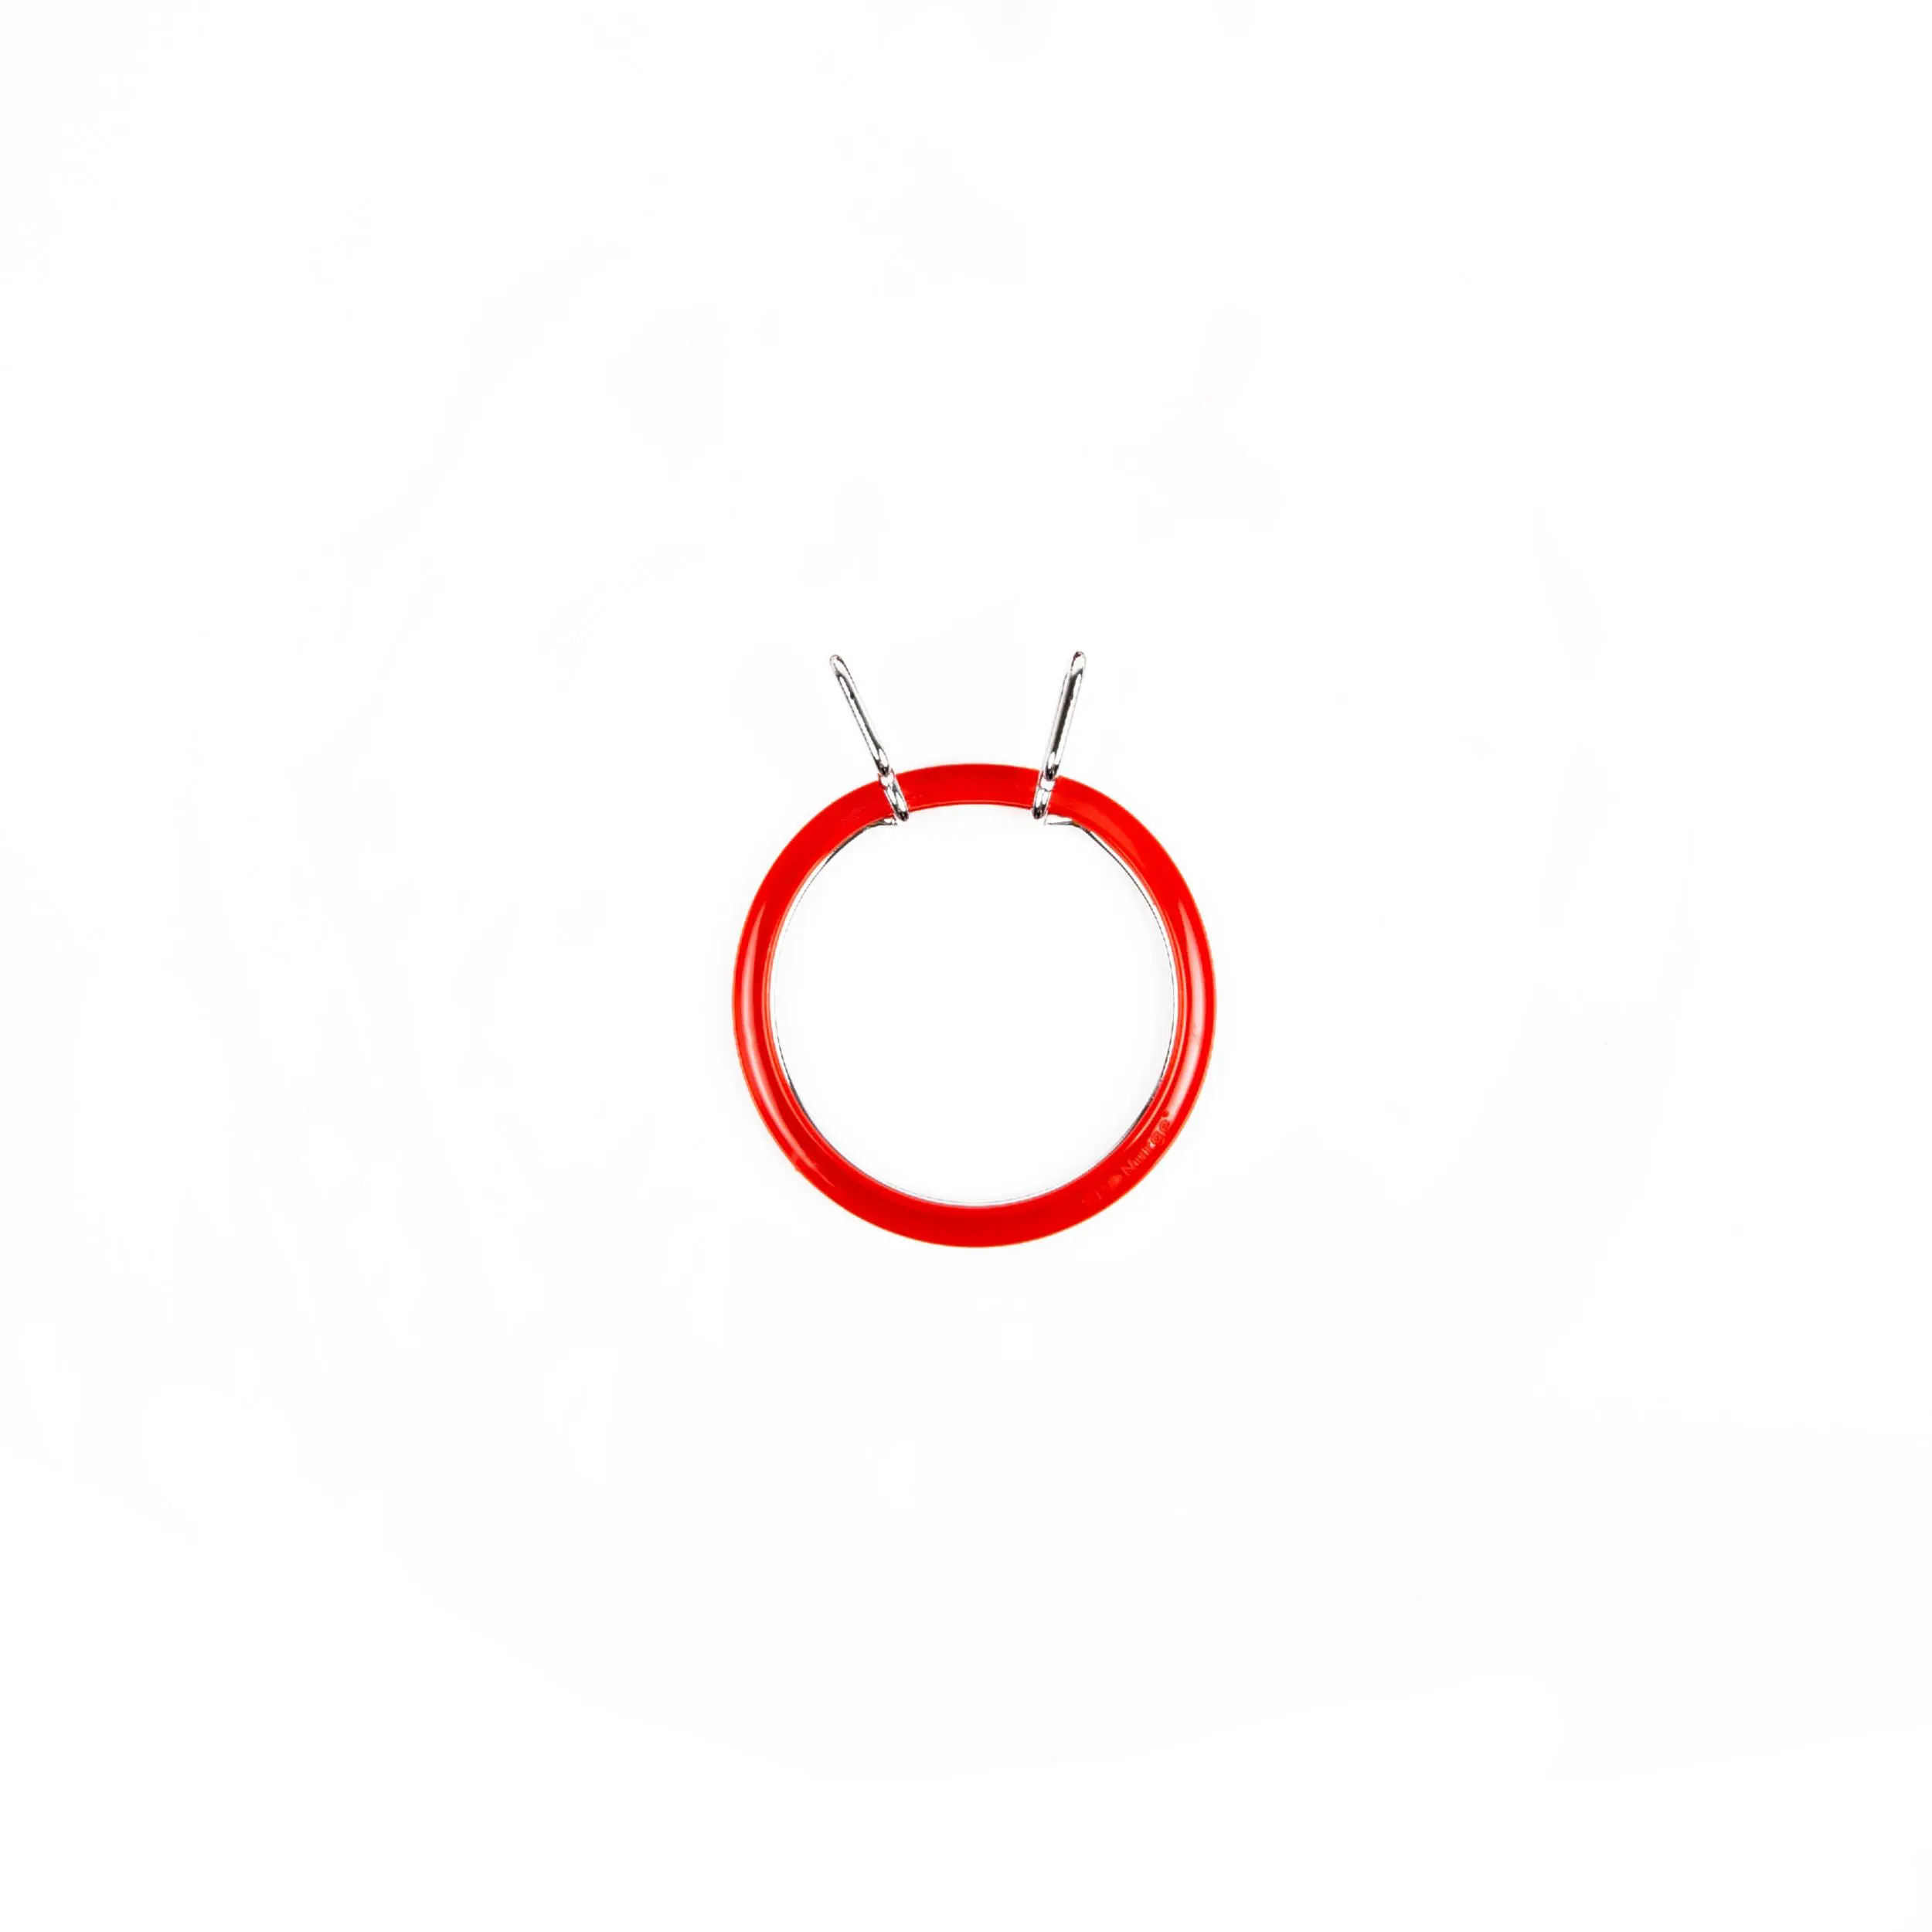 160-3/червоні Пяльці Nurge пружинні для вишивання та штопки, висота обідка 2,6мм, діаметр 58мм